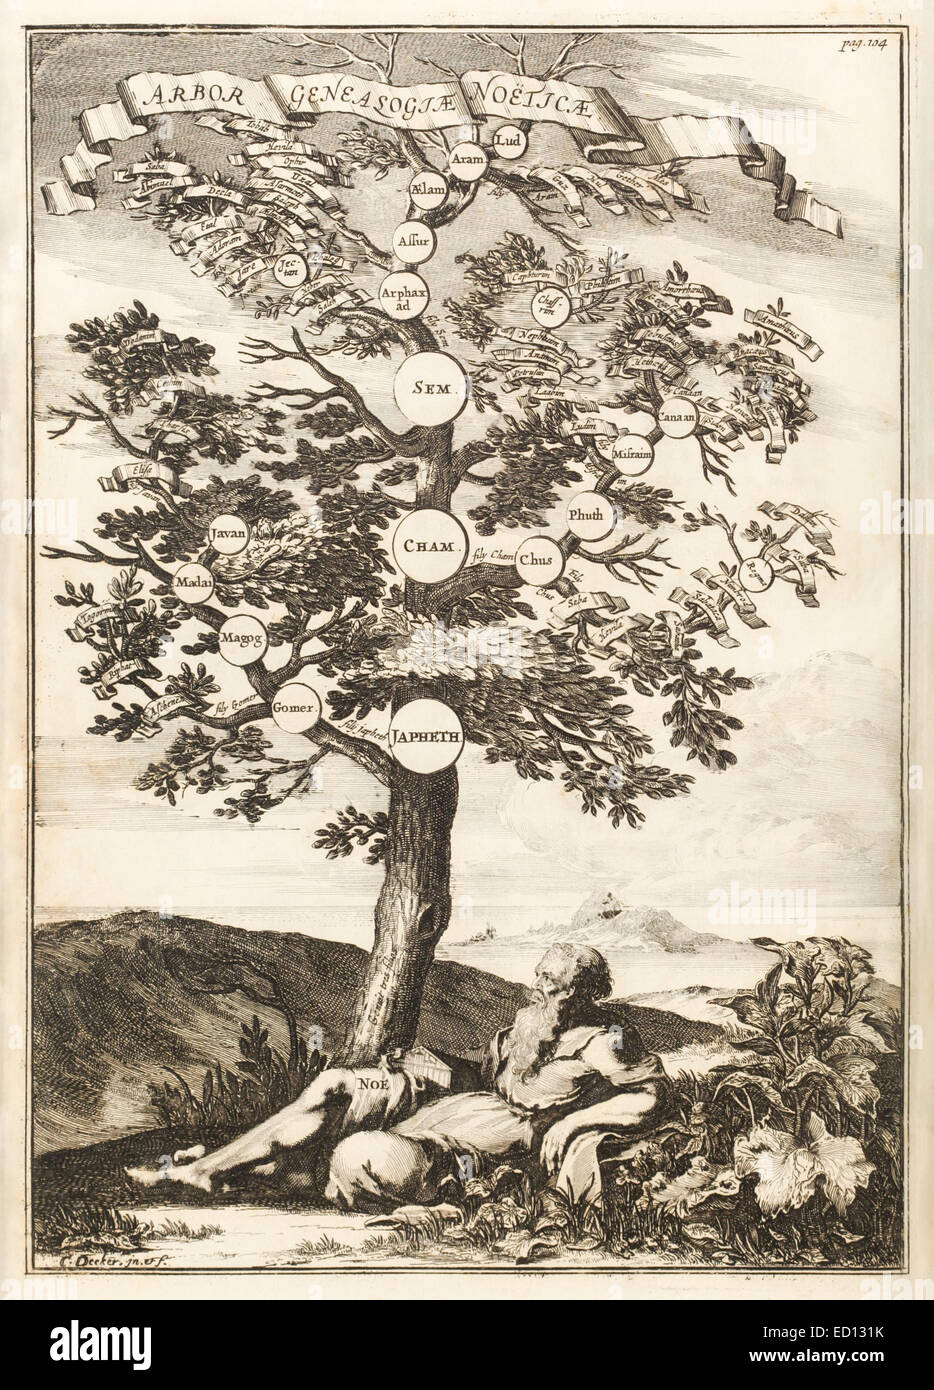 La famille de Noé Tree, illustration du 17ème siècle. Voir la description pour plus d'informations. Banque D'Images